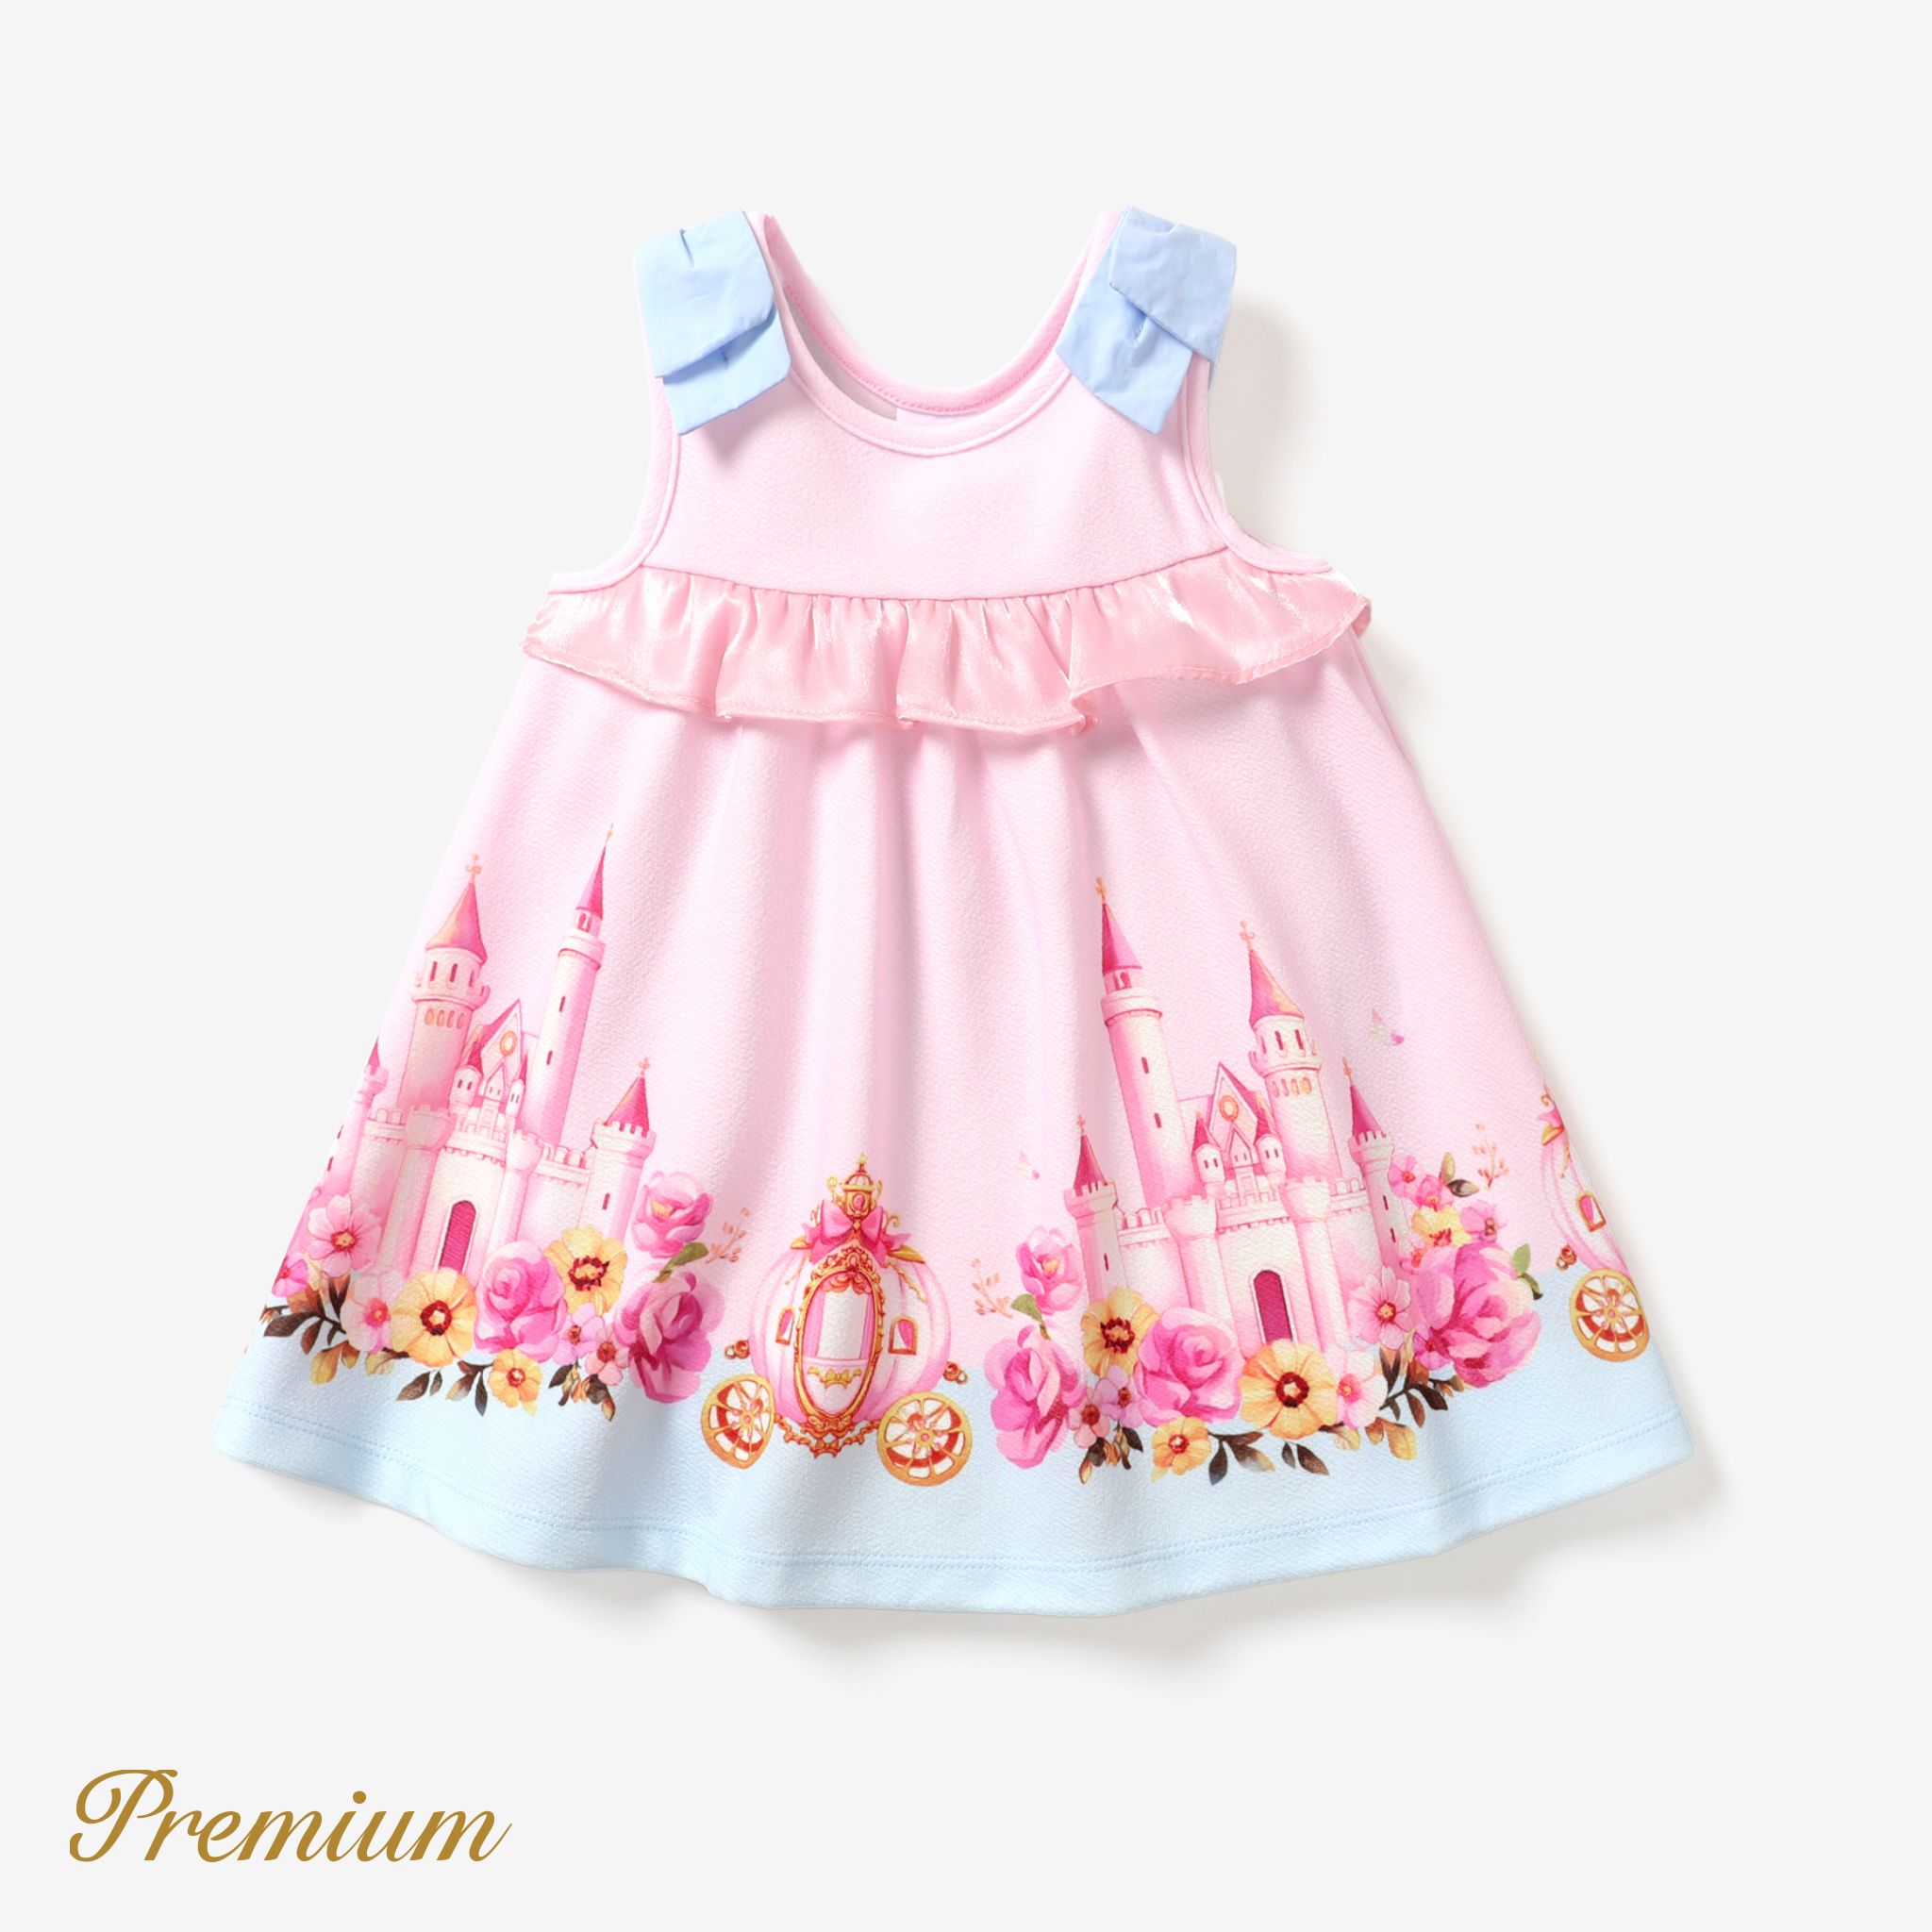 Baby Girl Elegant Flower Romper/Dress with Ruffle Edge